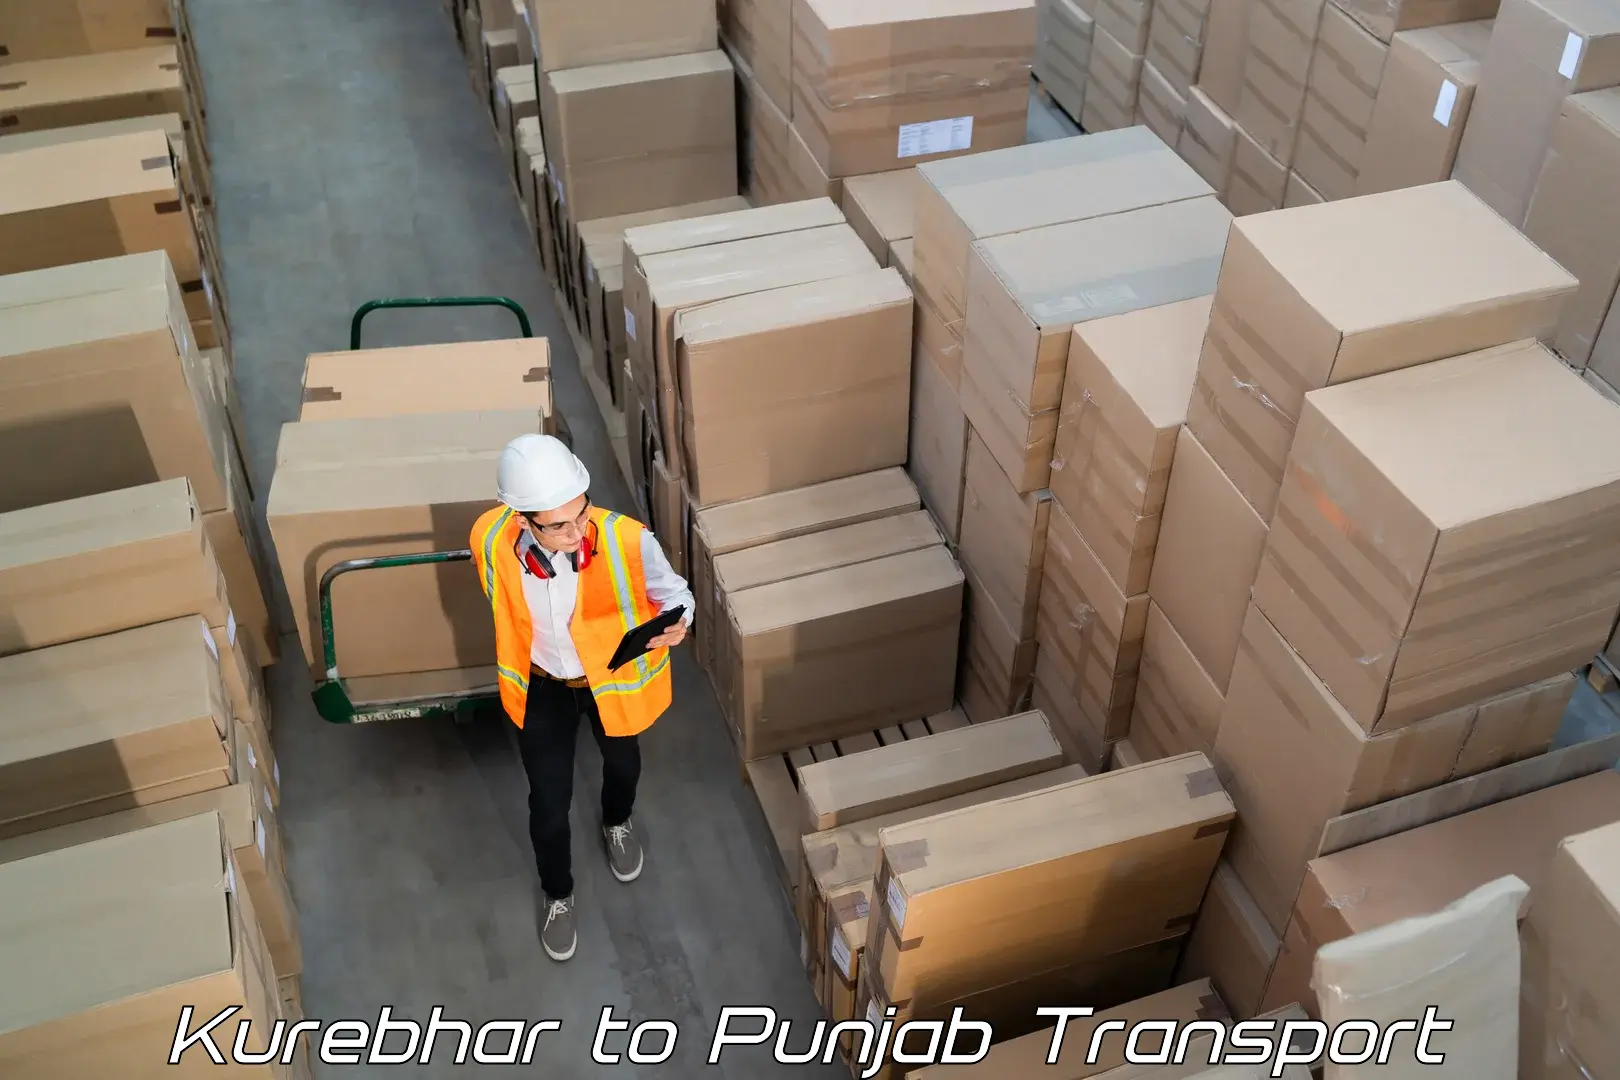 Transport in sharing Kurebhar to Punjab